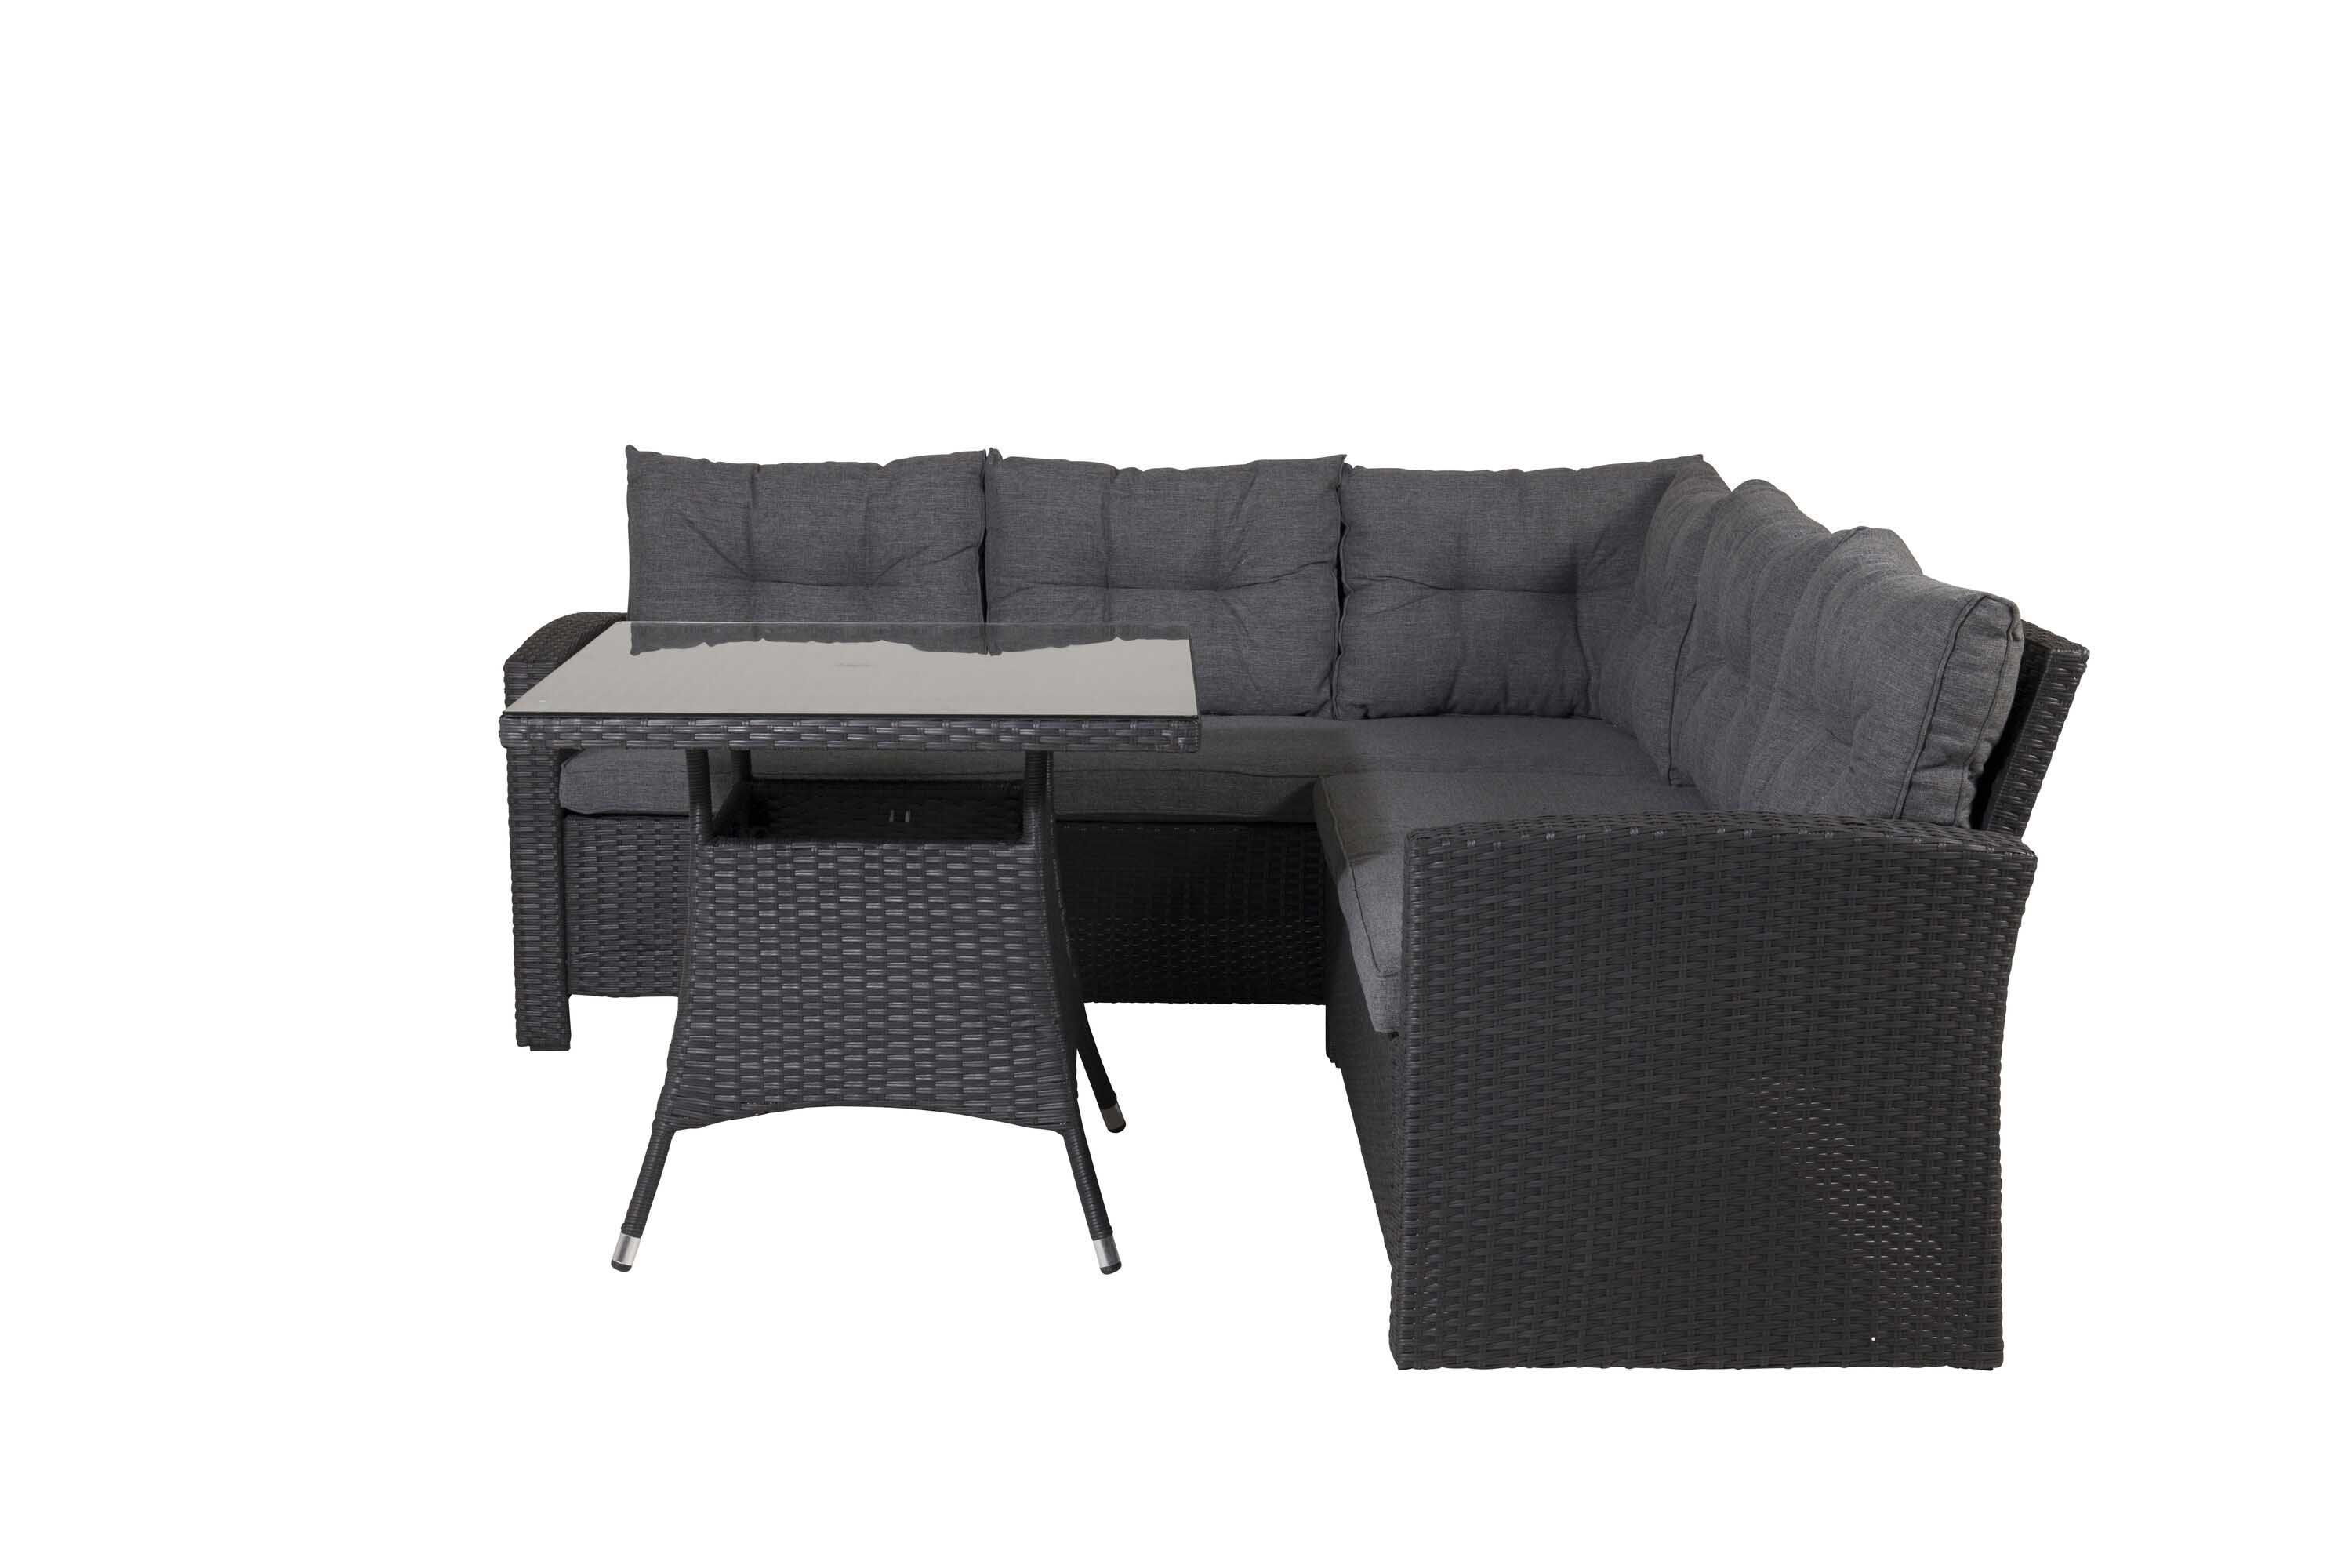 Venture Design Watford sofagruppe Sort med grå hynde 3-personers ende, 2-personers ende & bord 80x80 cm